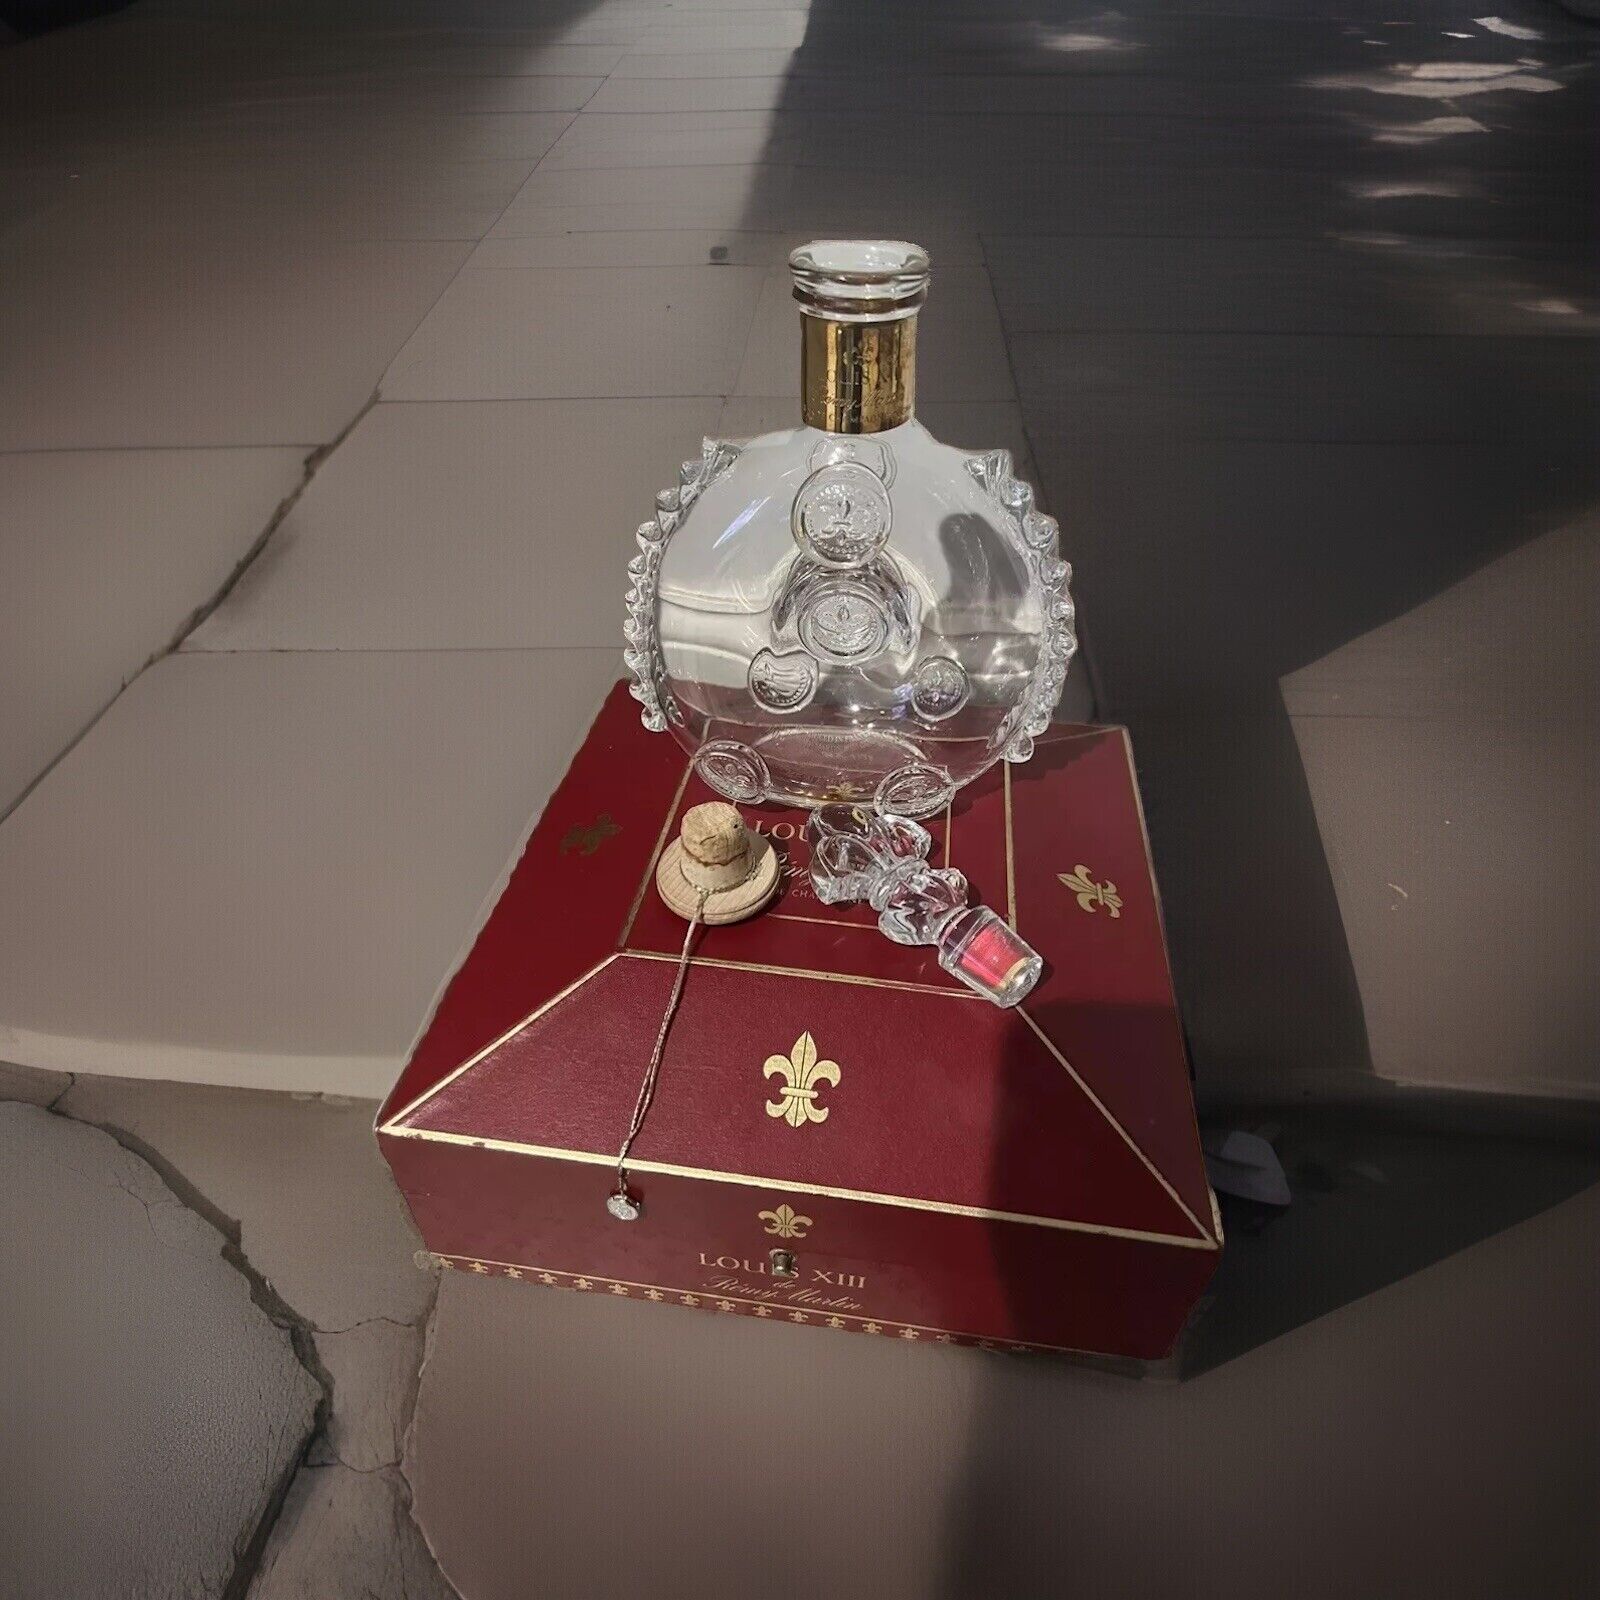 Remy Martin Louis XIII Cognac Crystal Empty 750ml Bottle w/ Casket Box